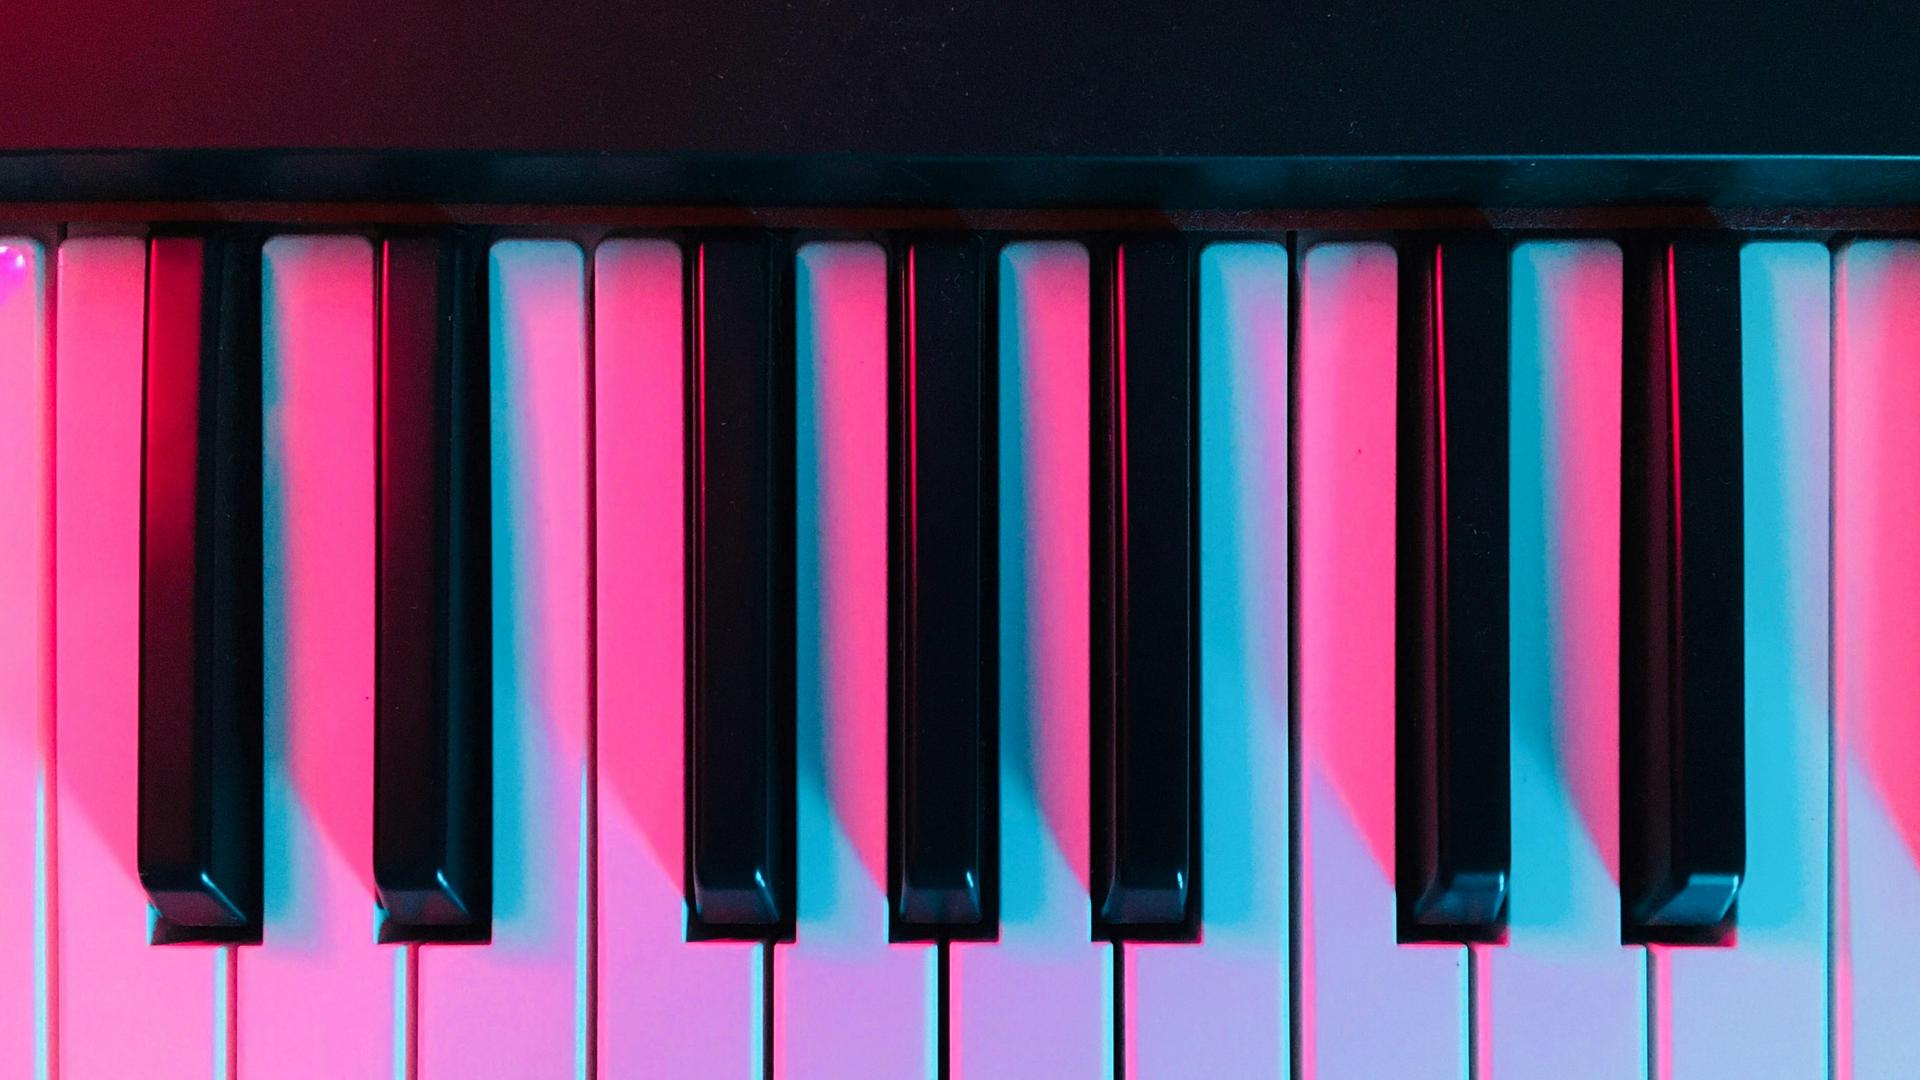 Blick auf moderne Klaviertasten, die in pinkfarbenes Licht getaucht sind.